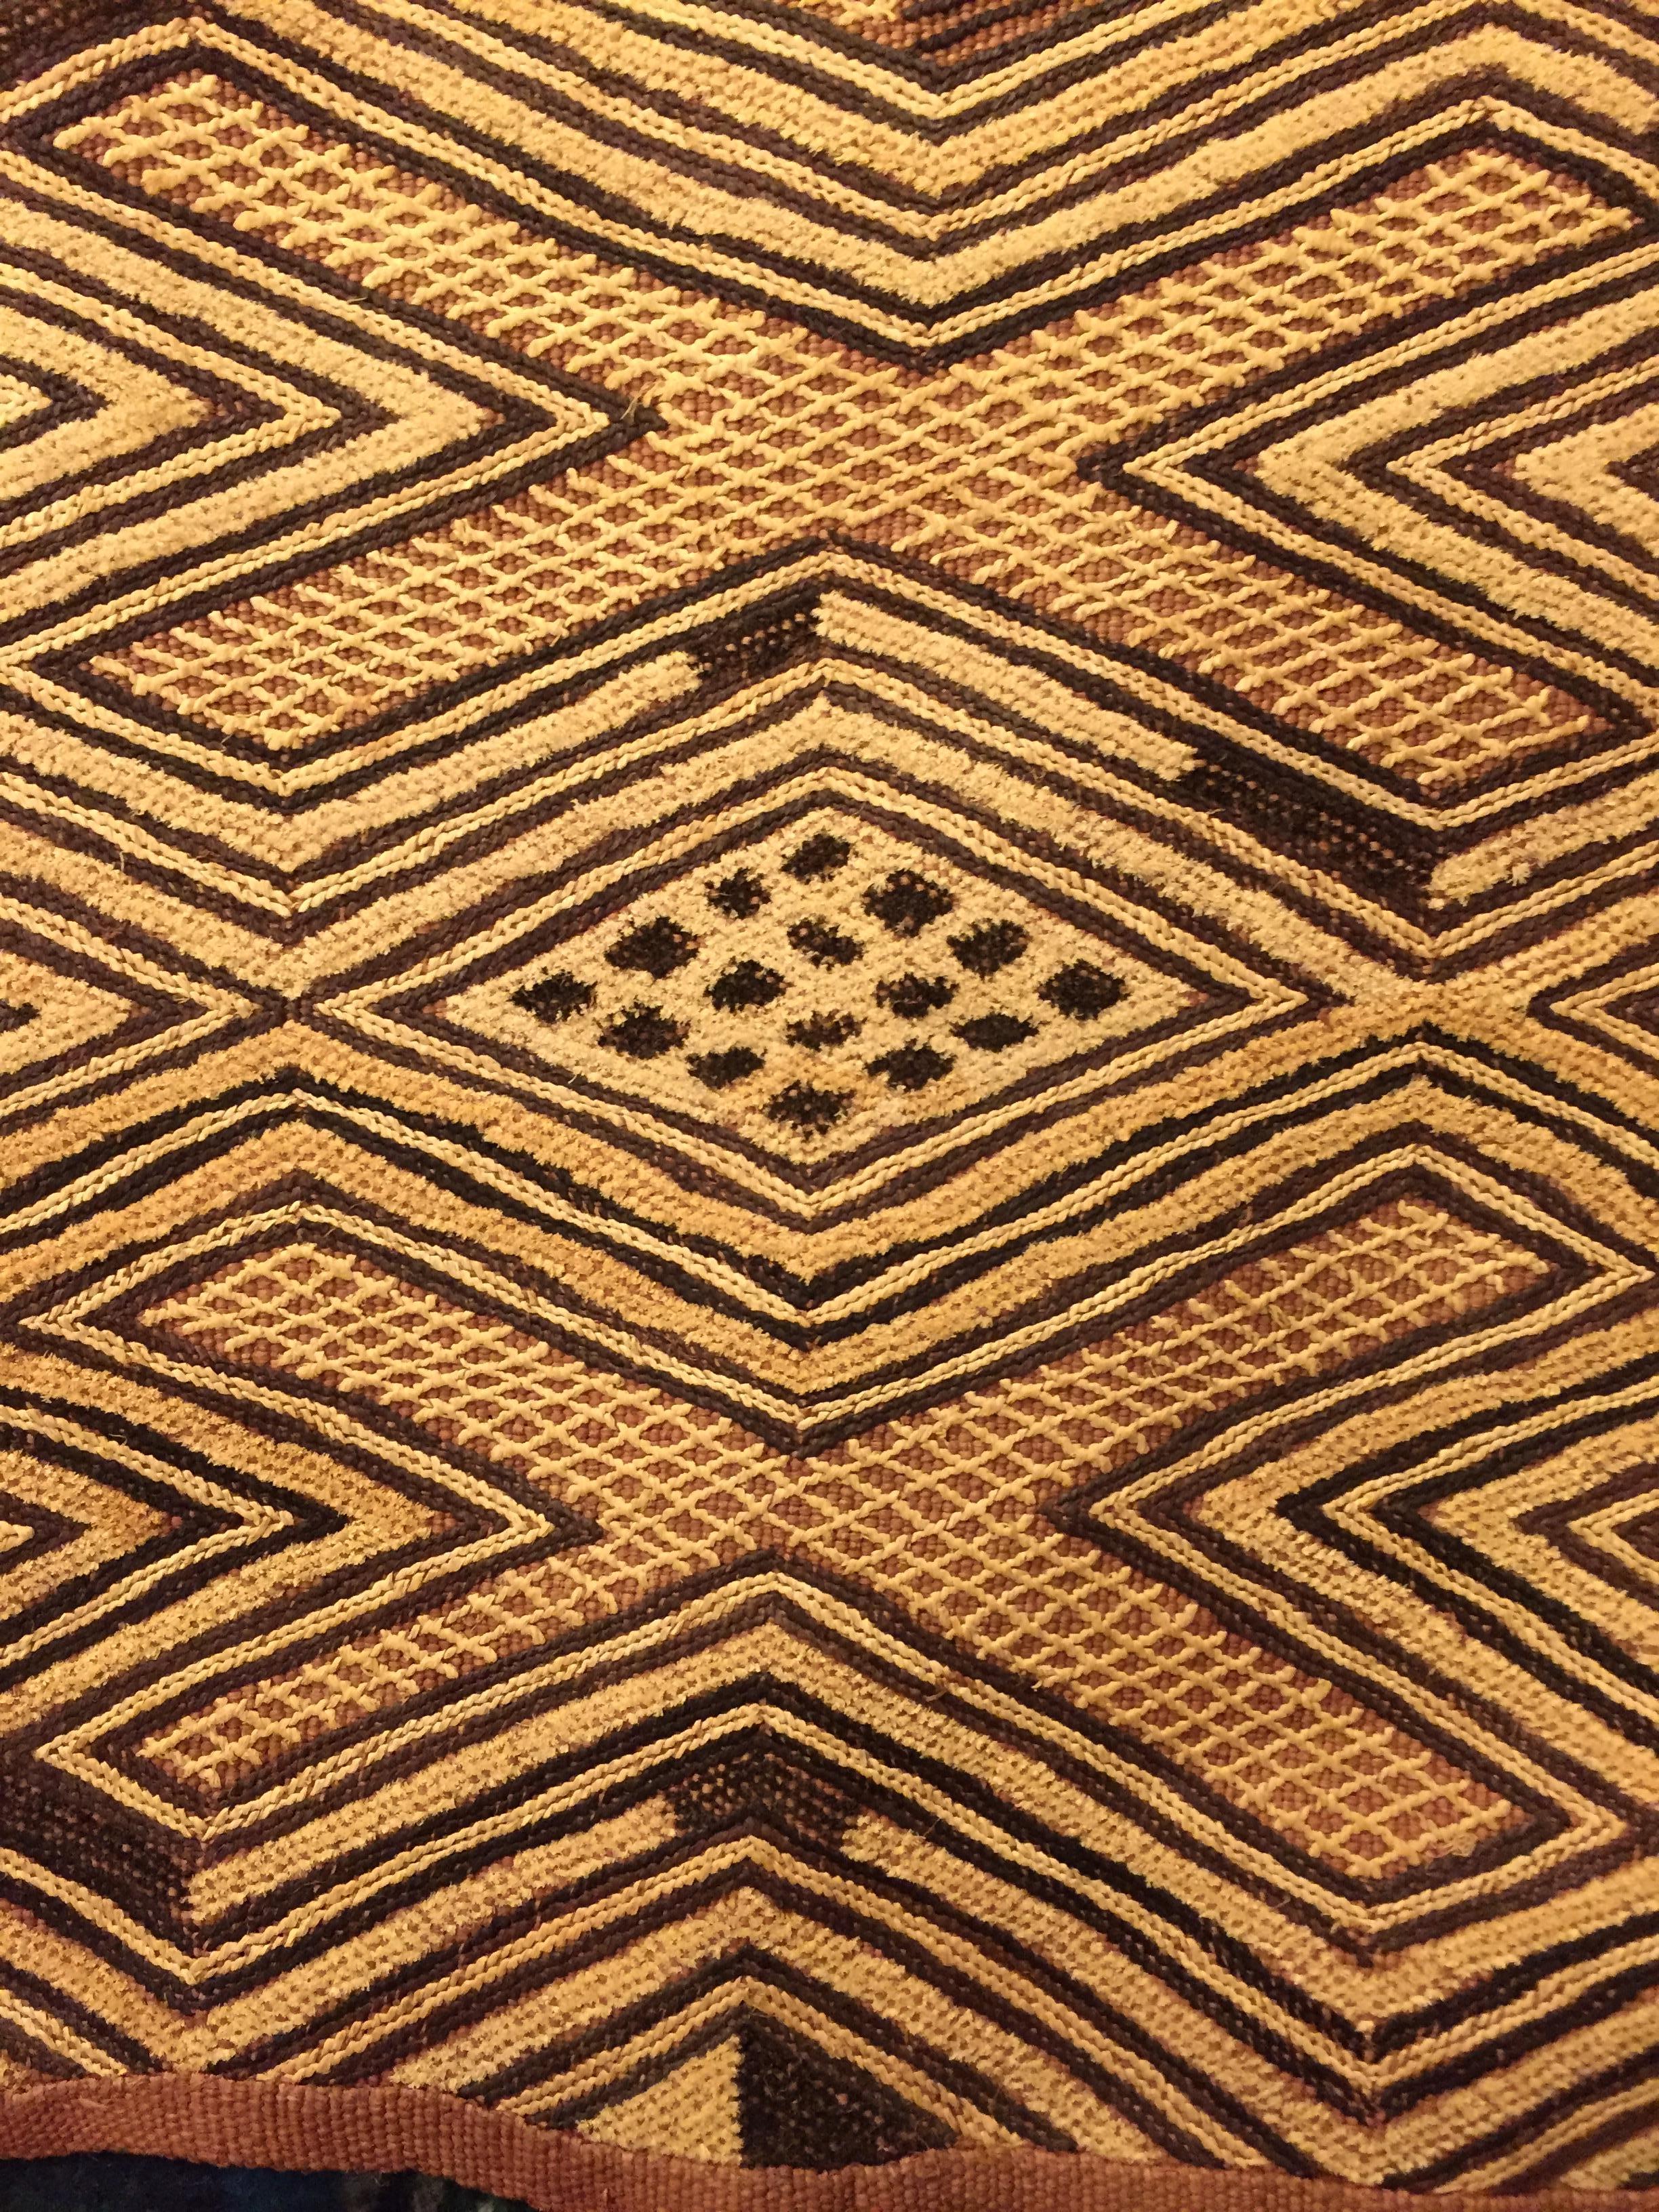 Embroidered Kuba, Shoowa African Tribal Art Textile with 